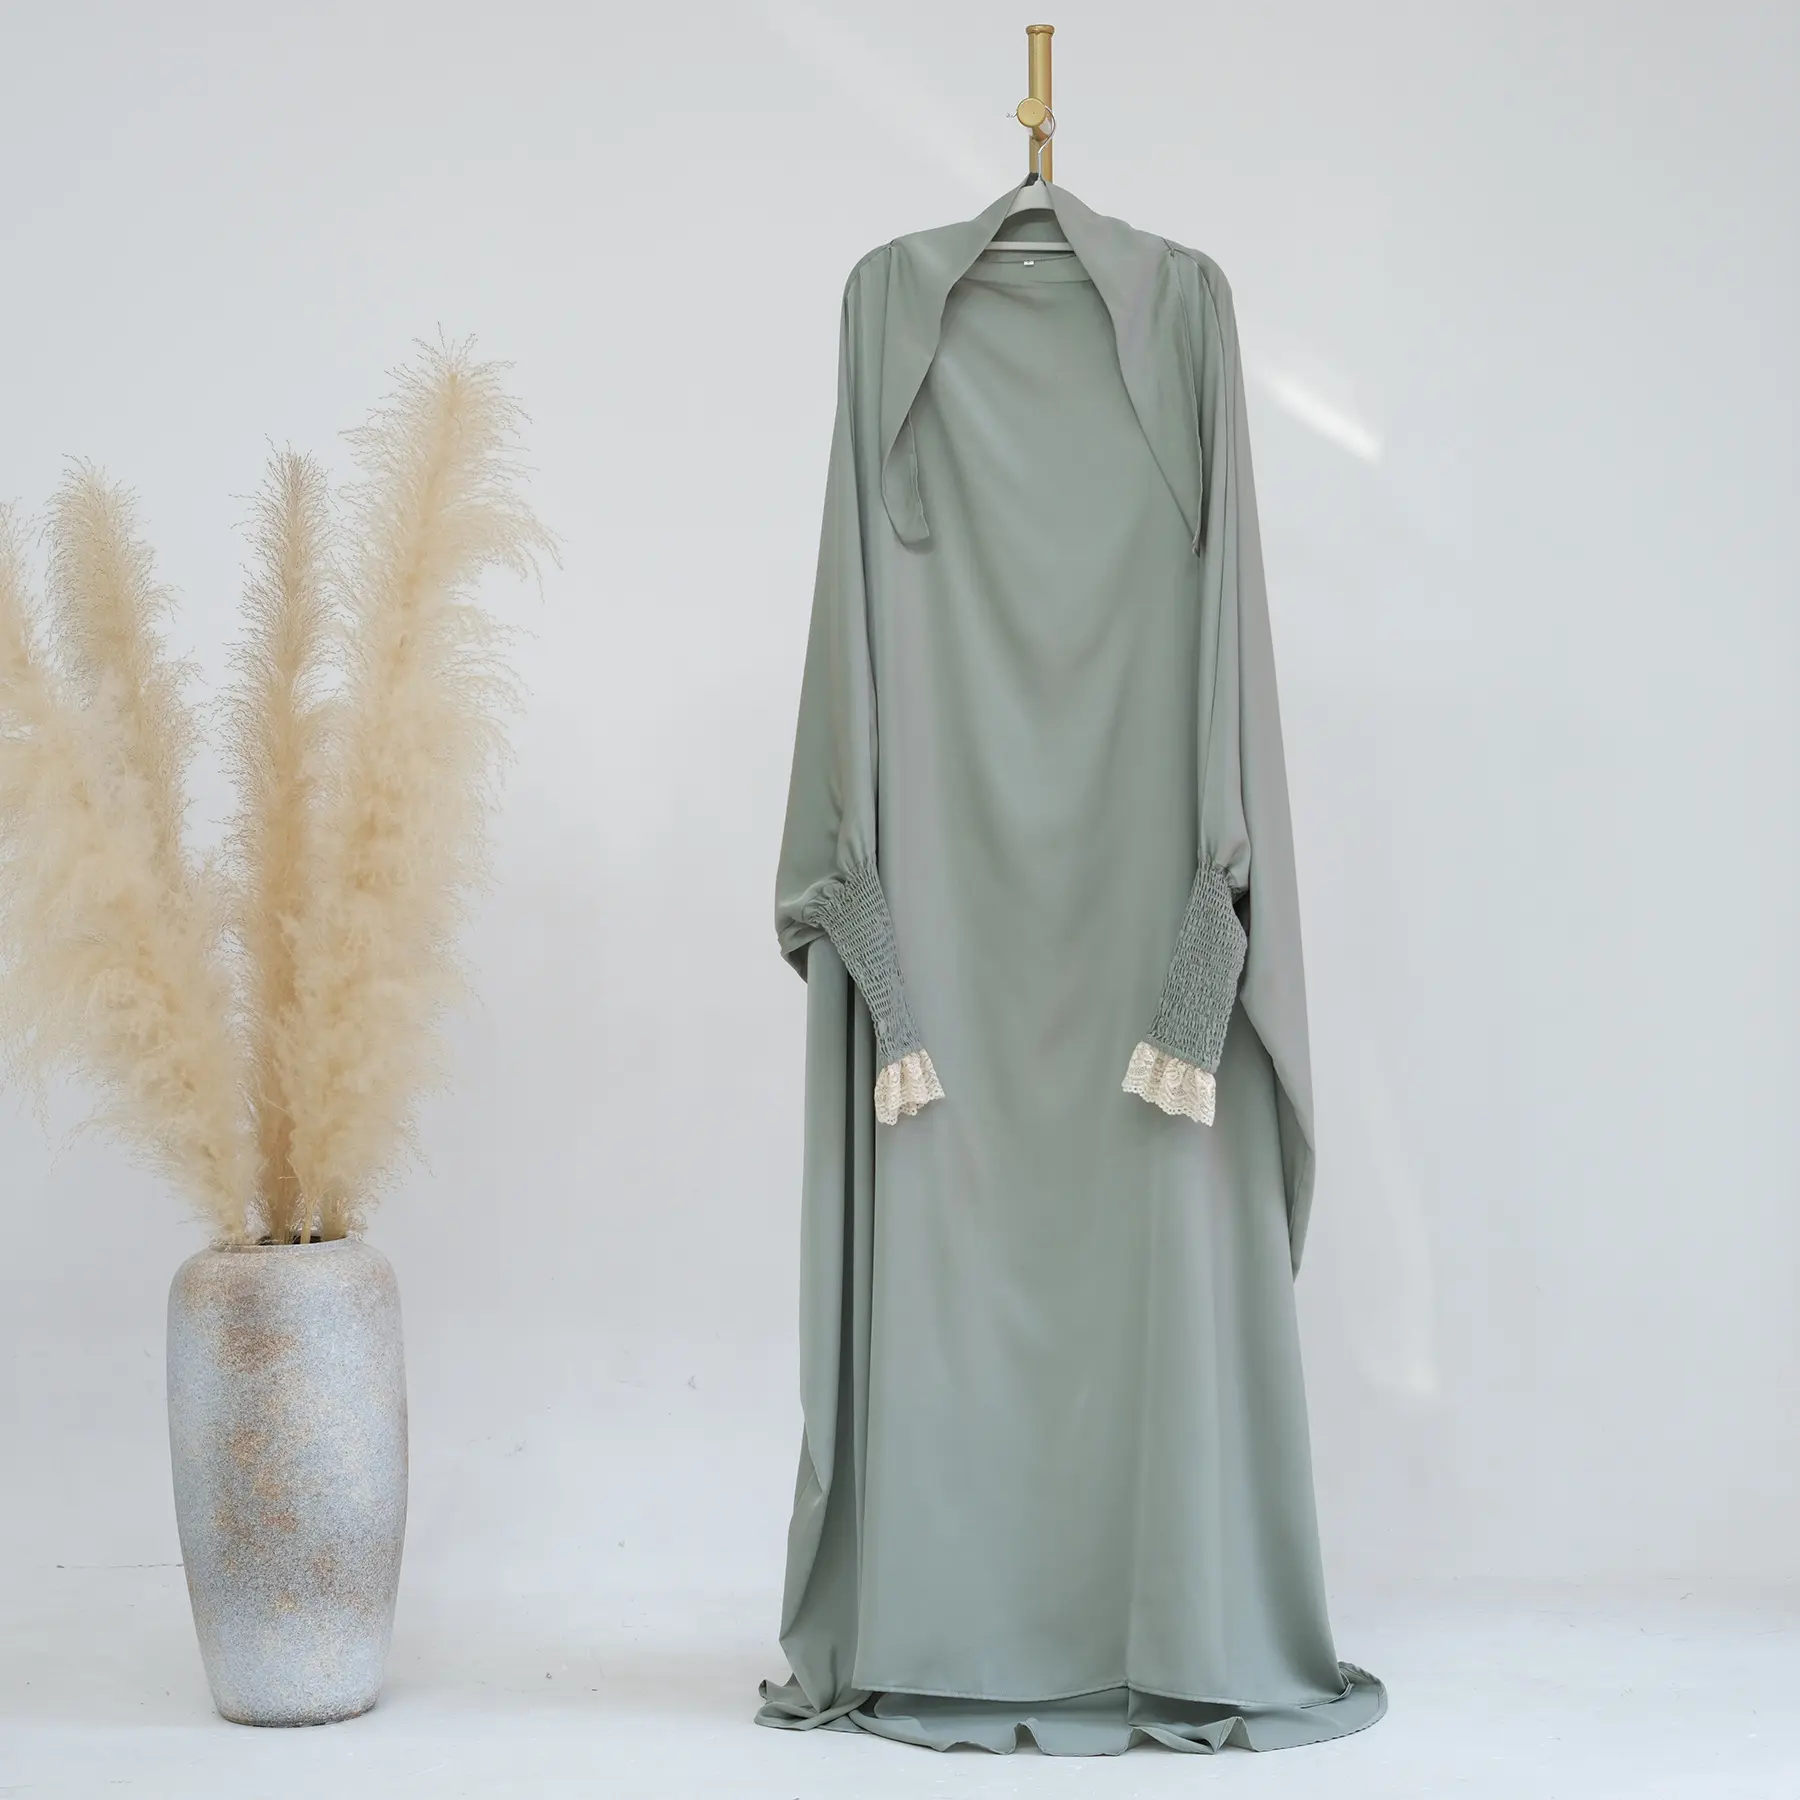 Yibaoliメーカー新デザイン9色ワンピースフランス女性の祈りドレス服サテンレース付き